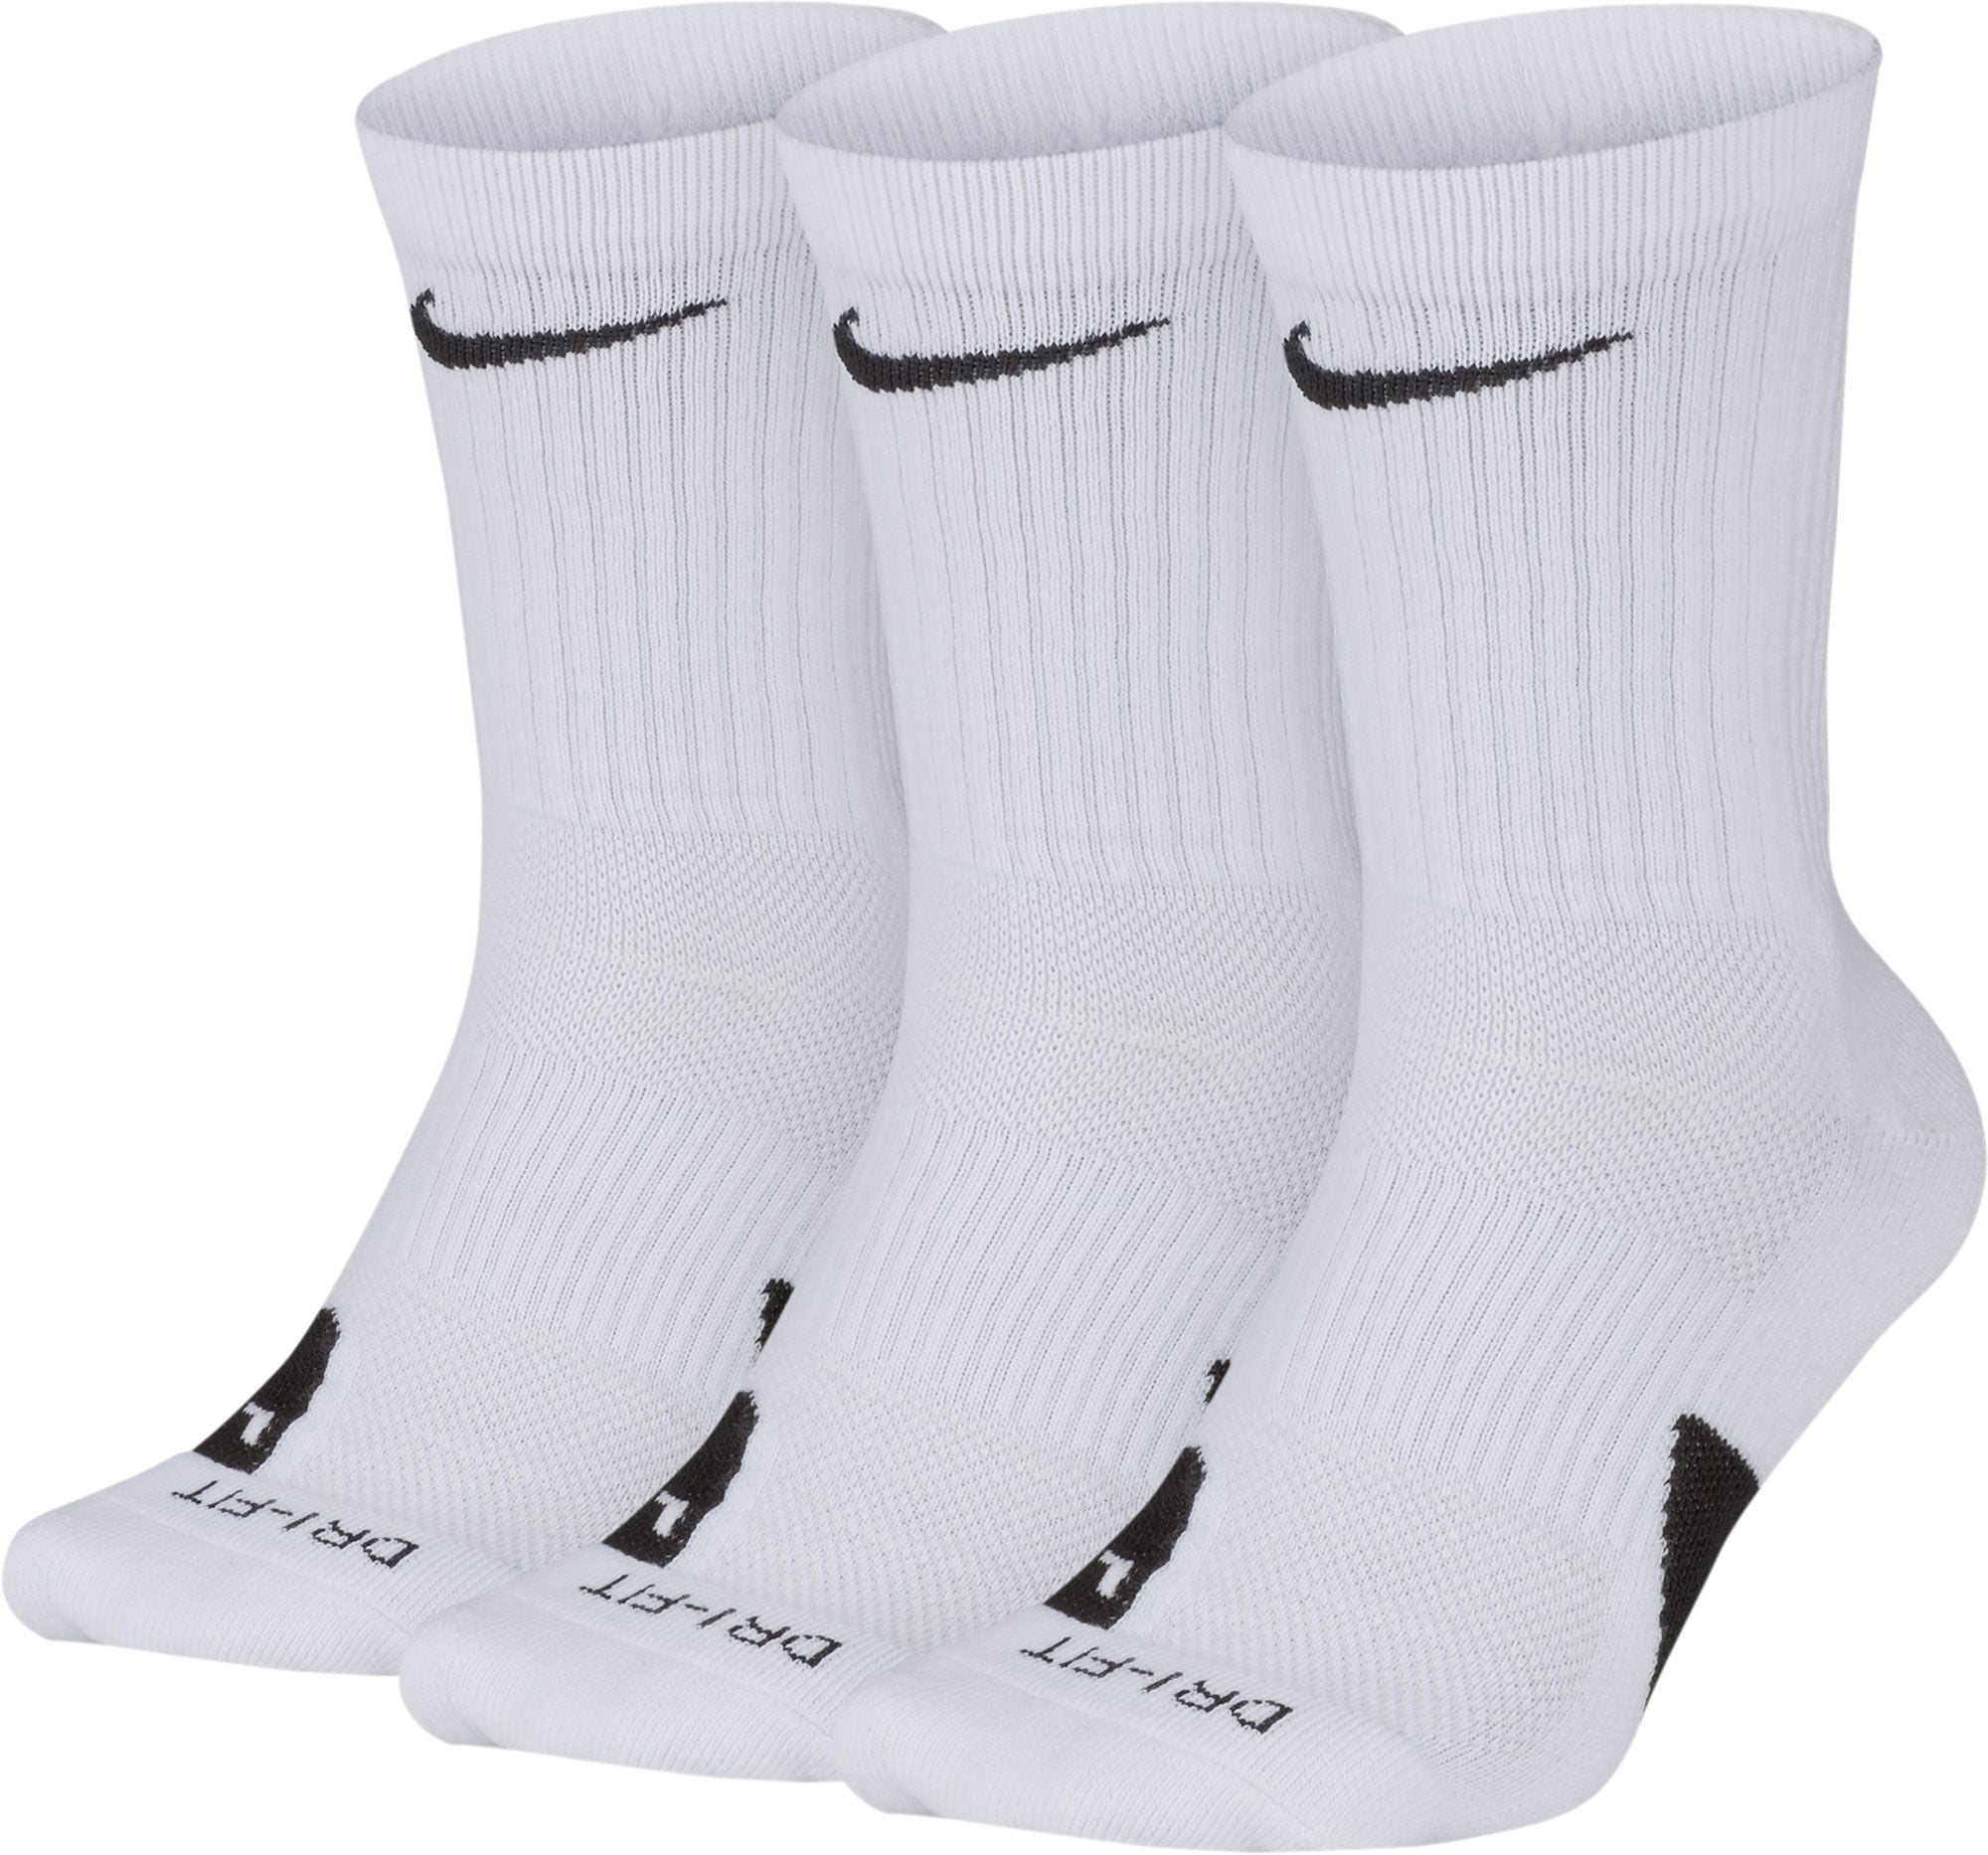 Nike Elite Basketball Crew Socks 3 Pack 